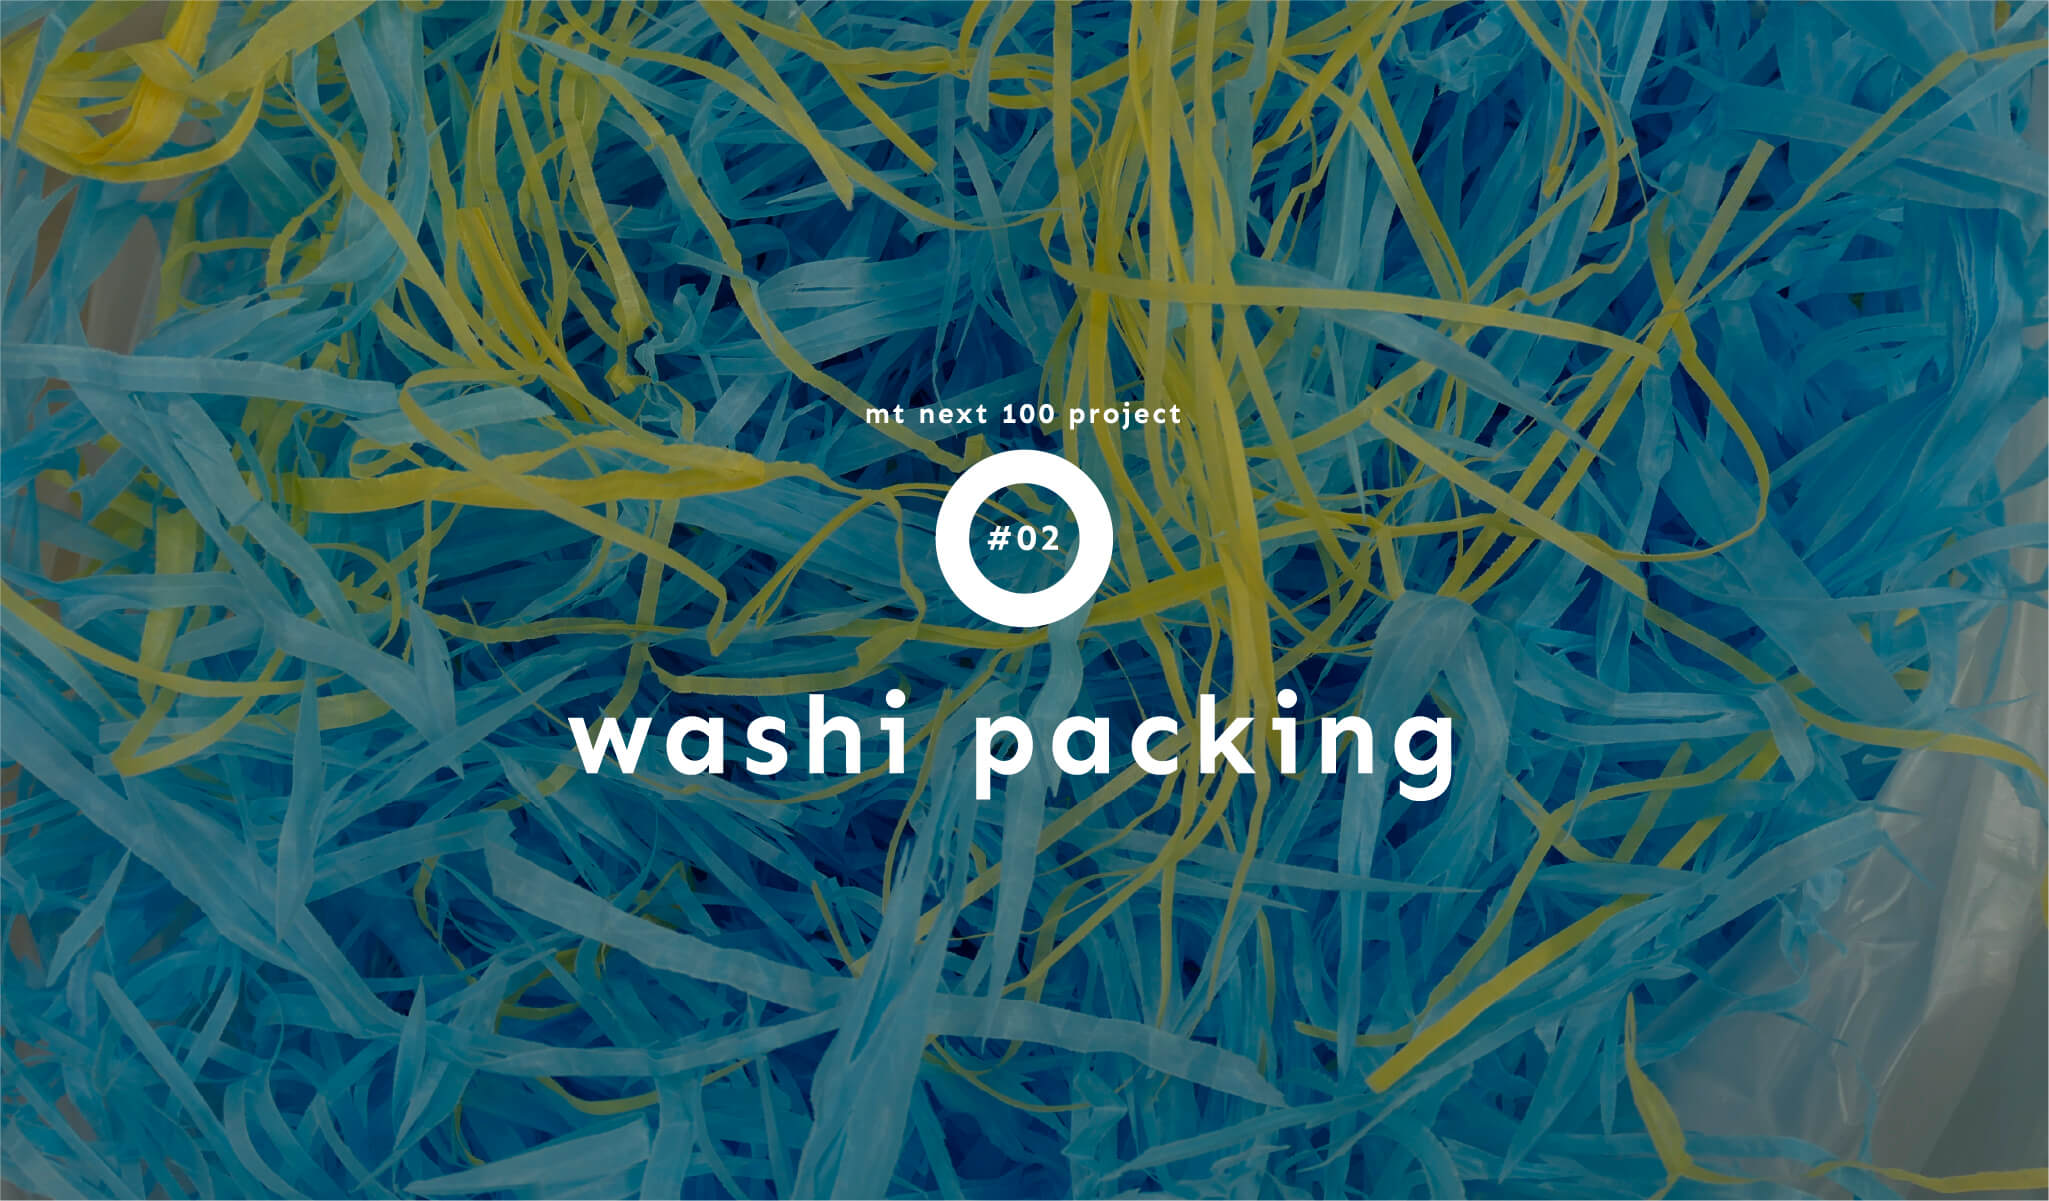 mt NEXT100 washi packing